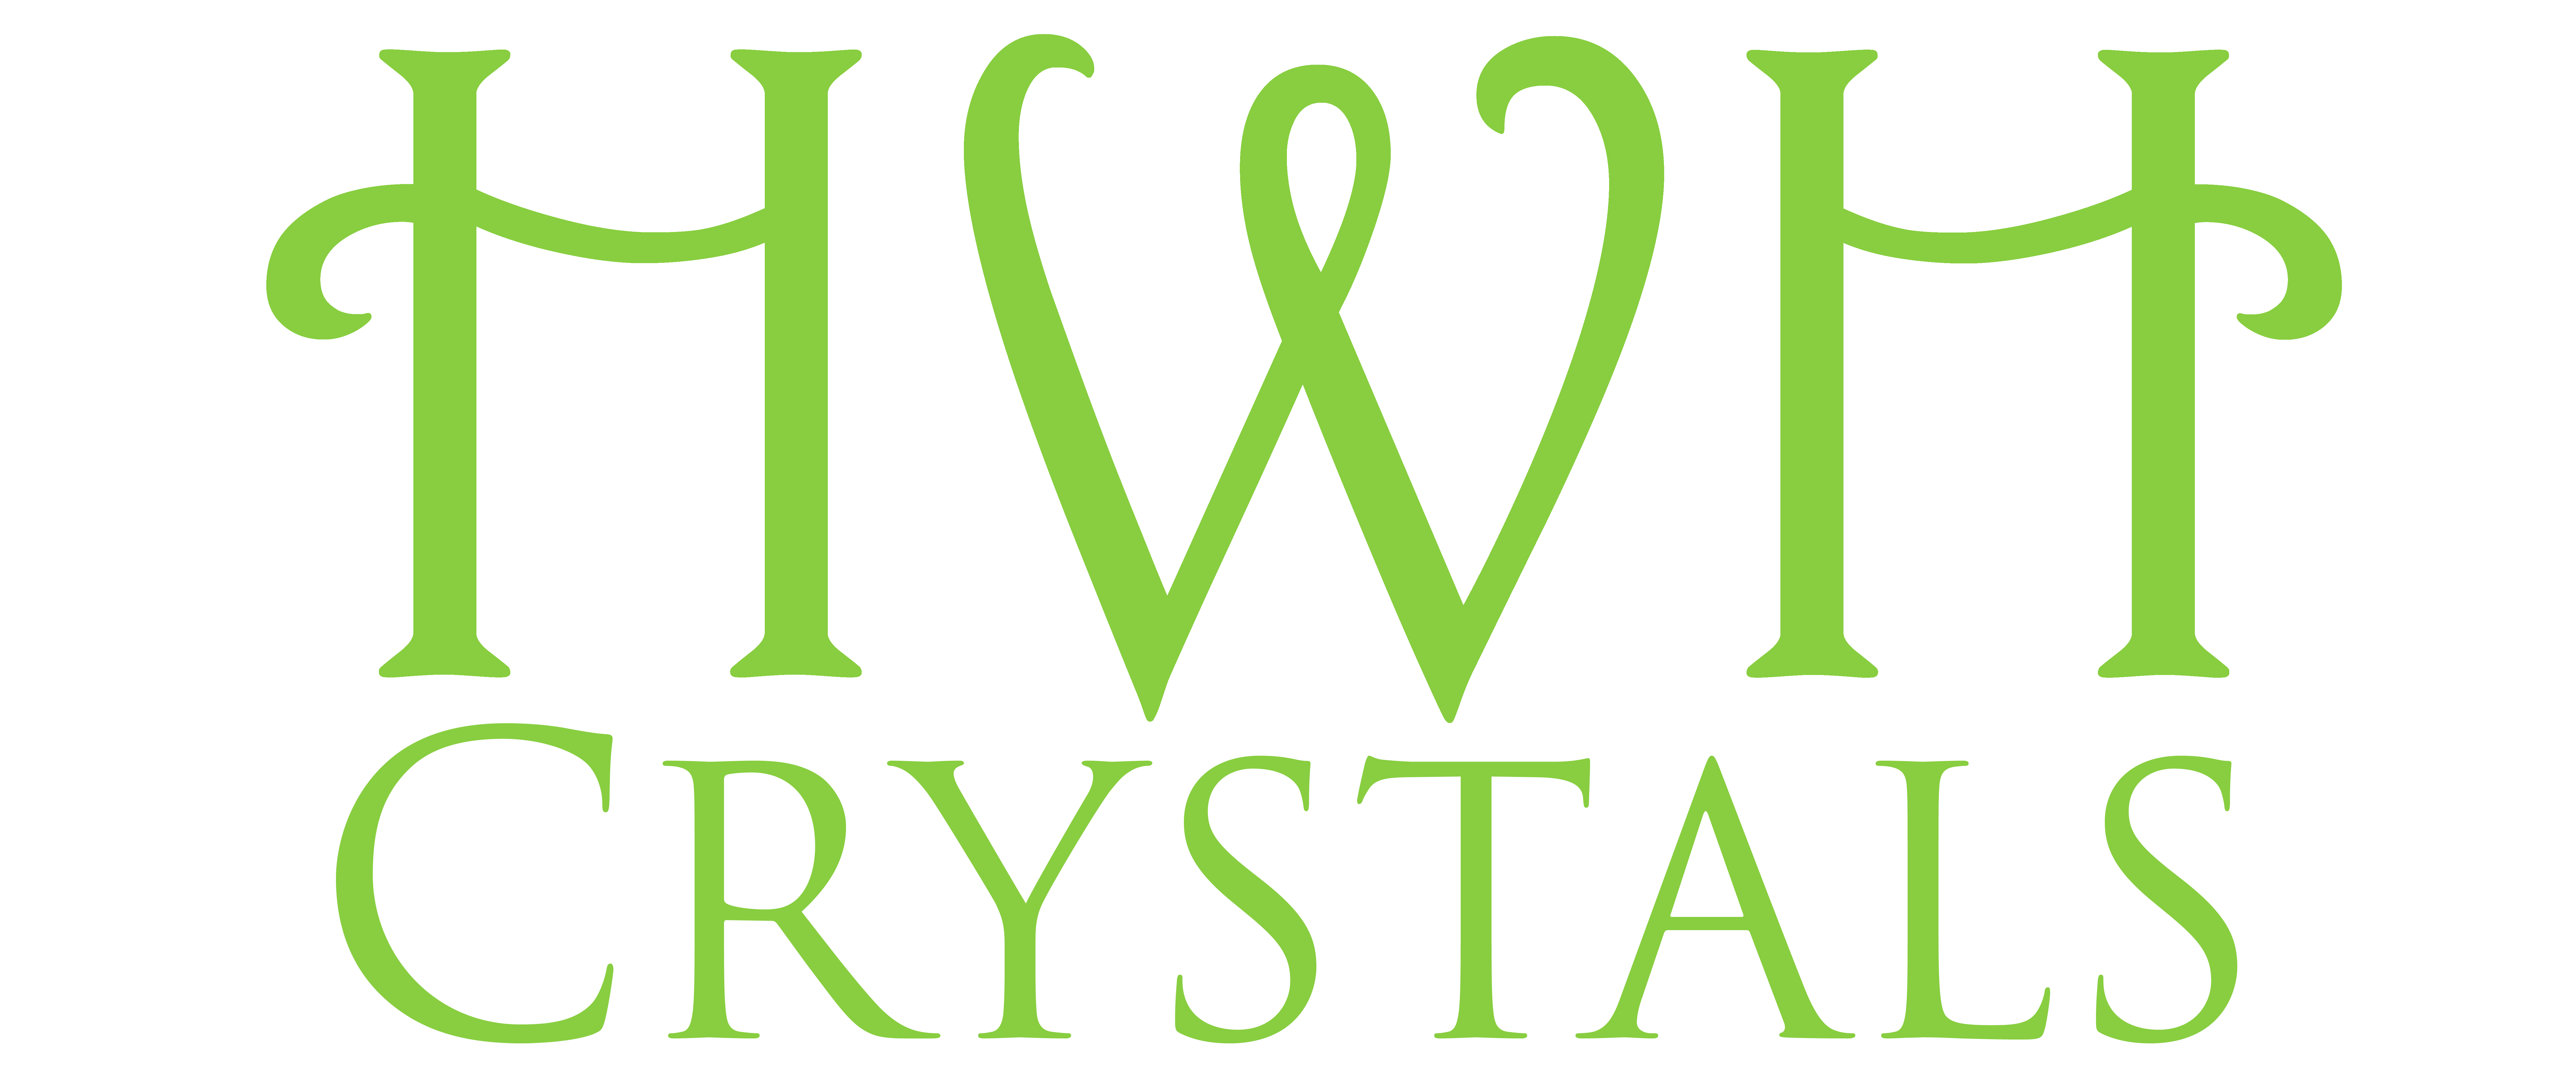 HWH Crystals logo